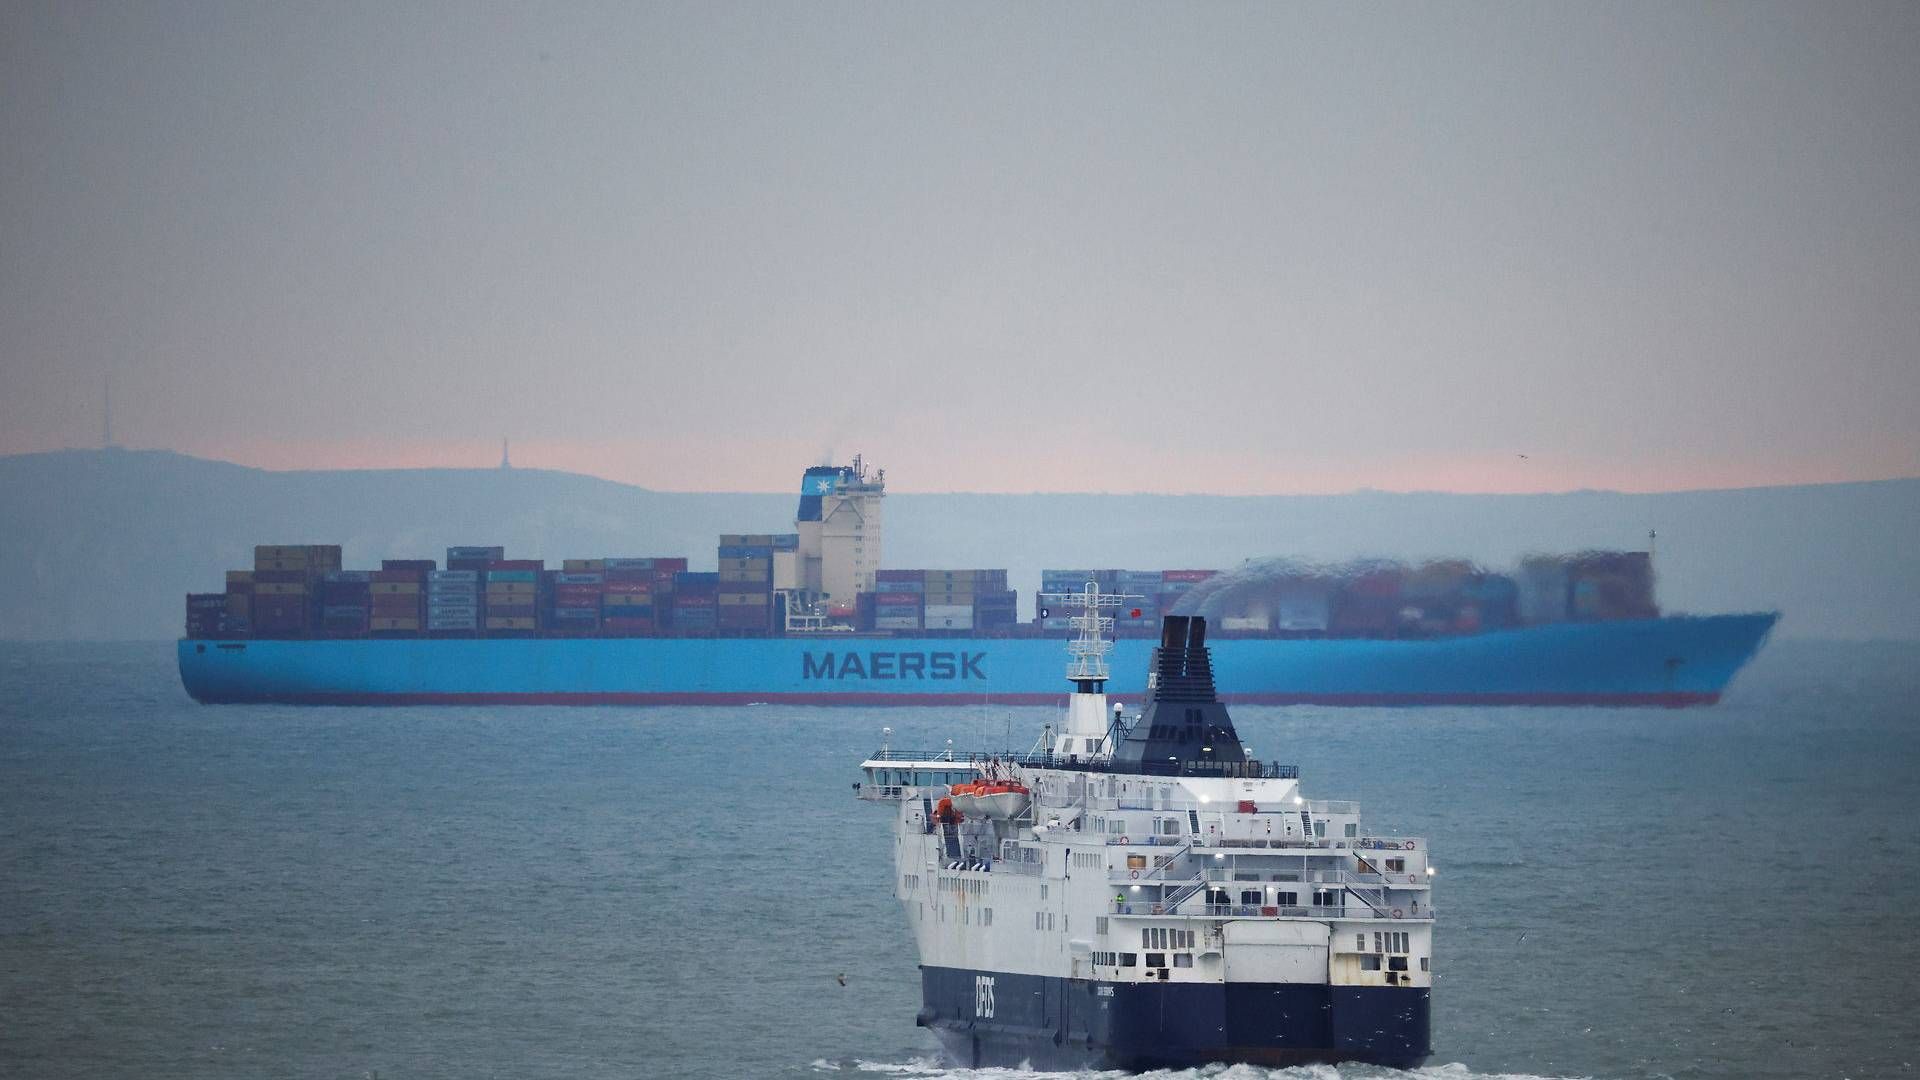 Søtransport har bidraget til den danske eksport. | Foto: John Sibley/Reuters/Ritzau Scanpix